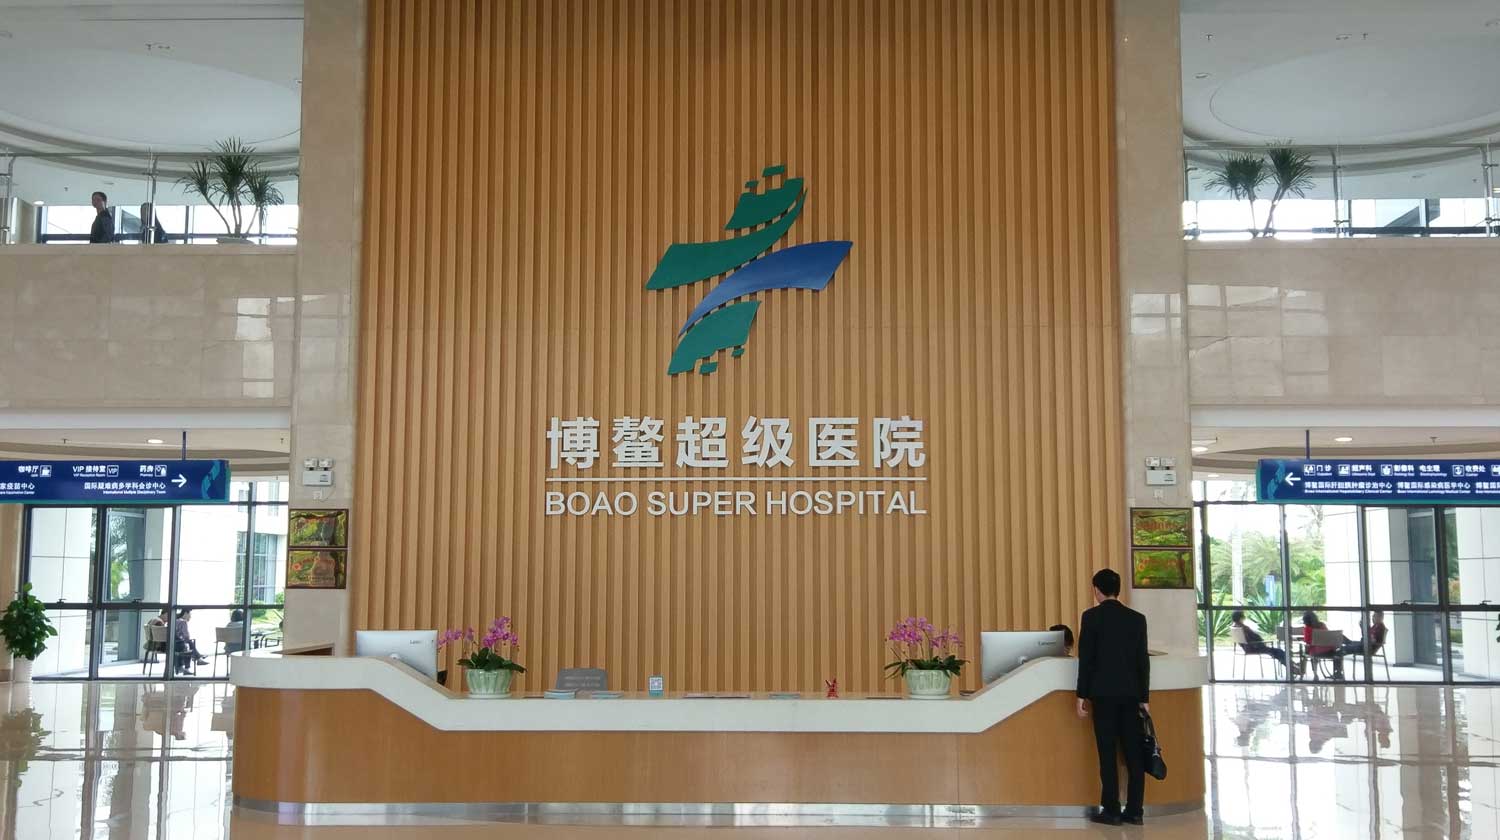 相片: 博鳌超级医院